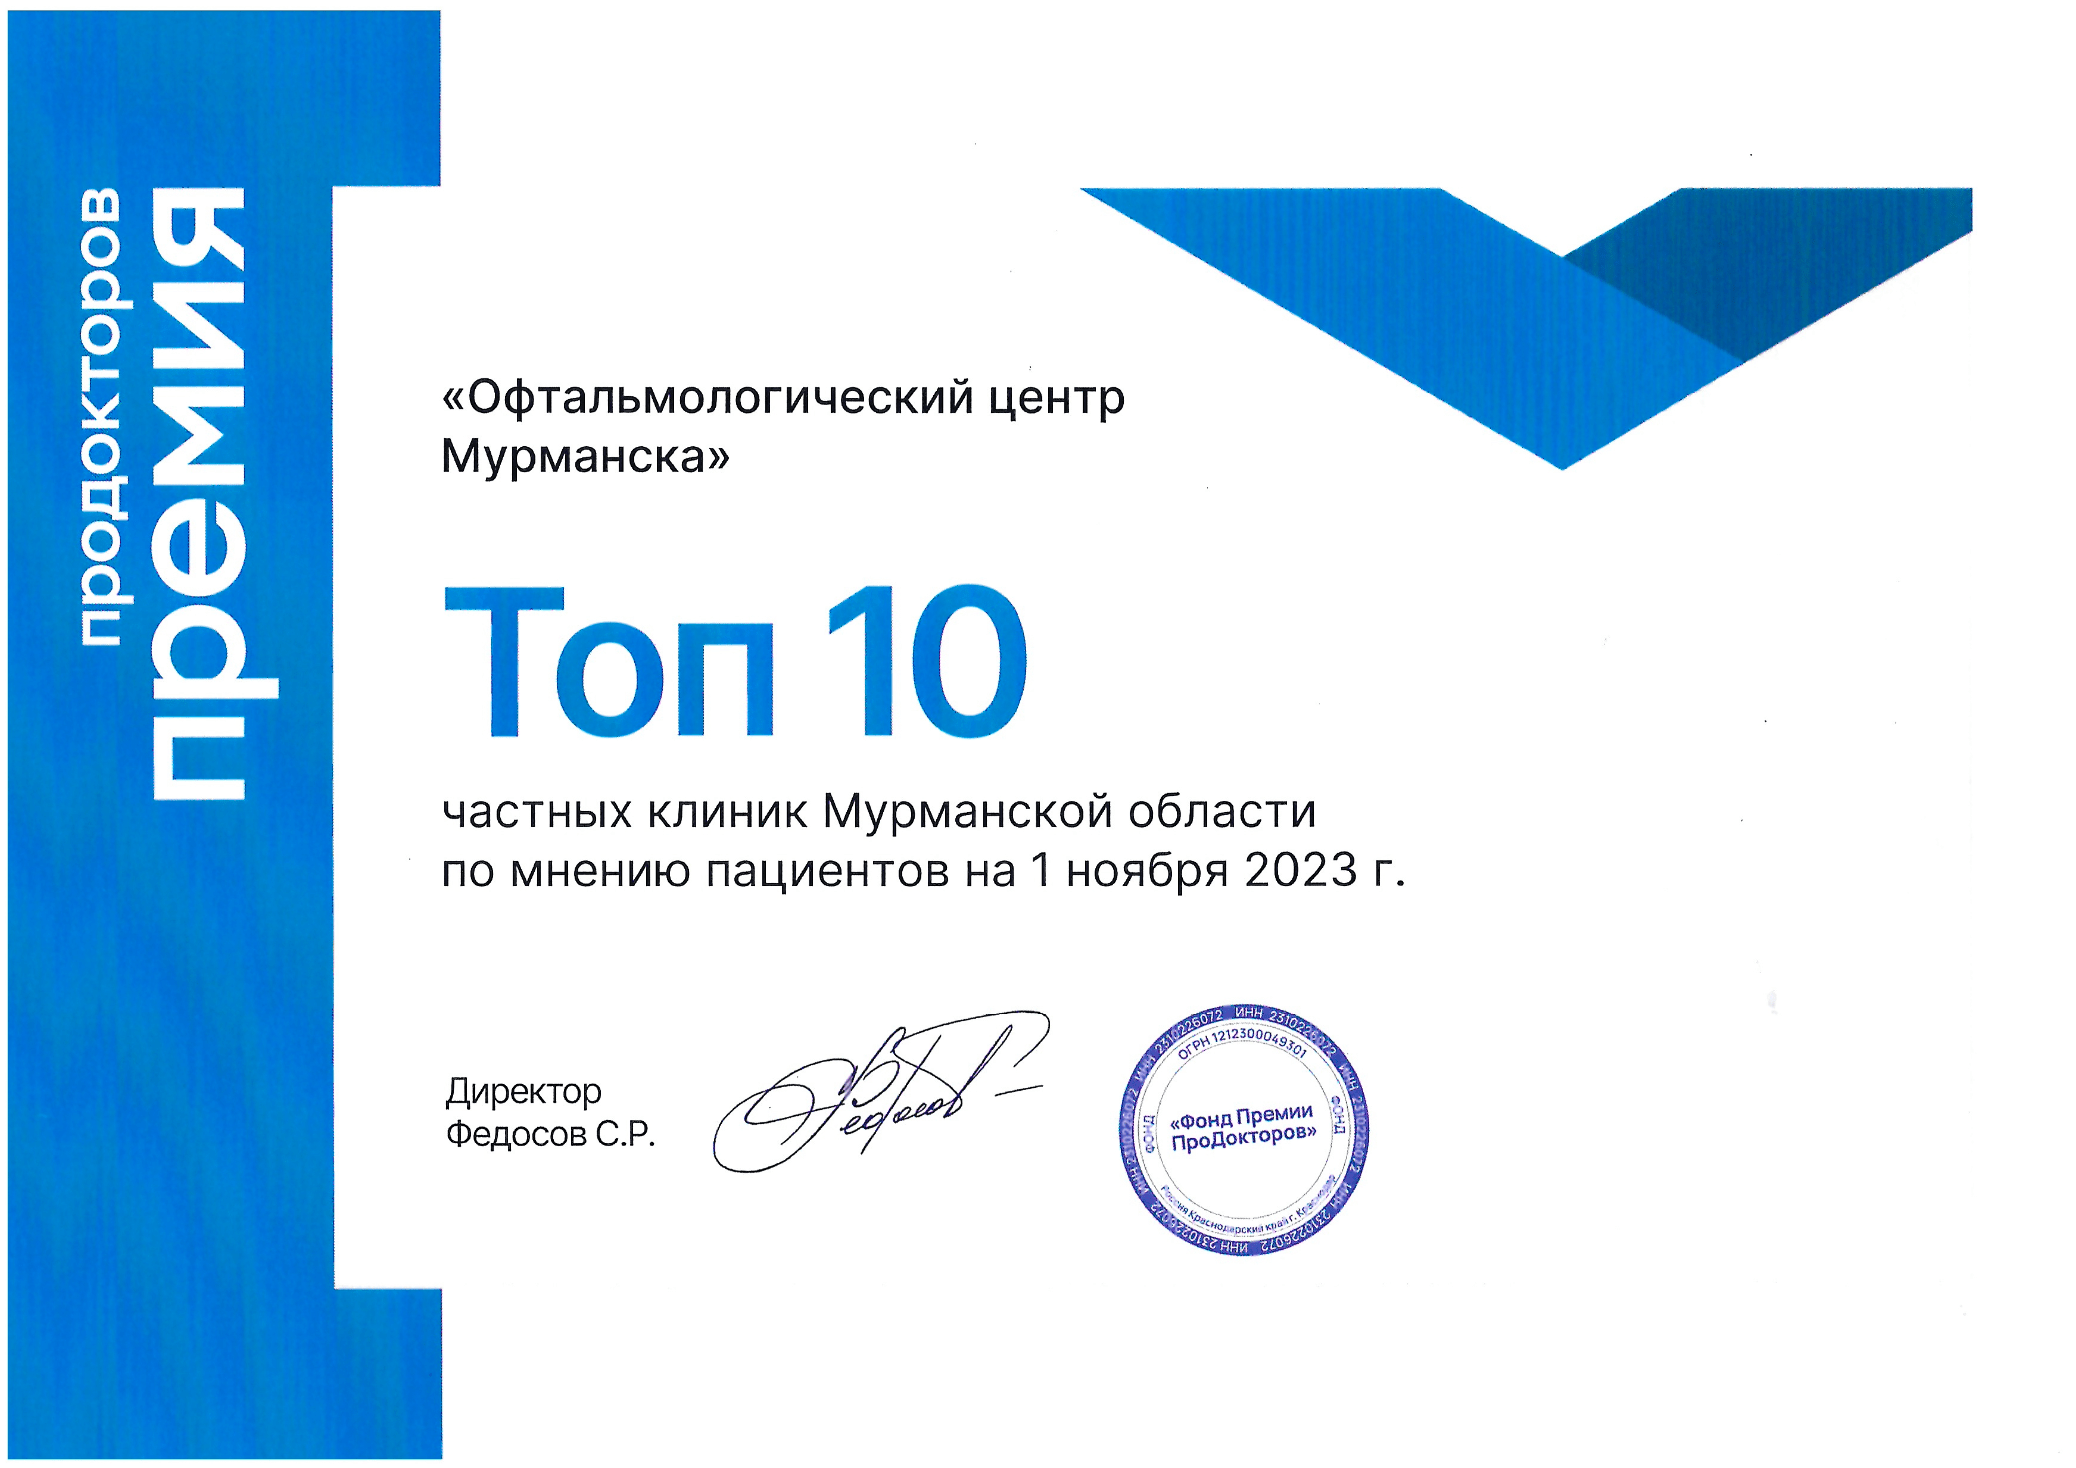 Победитель премии ПроДокторов 2023